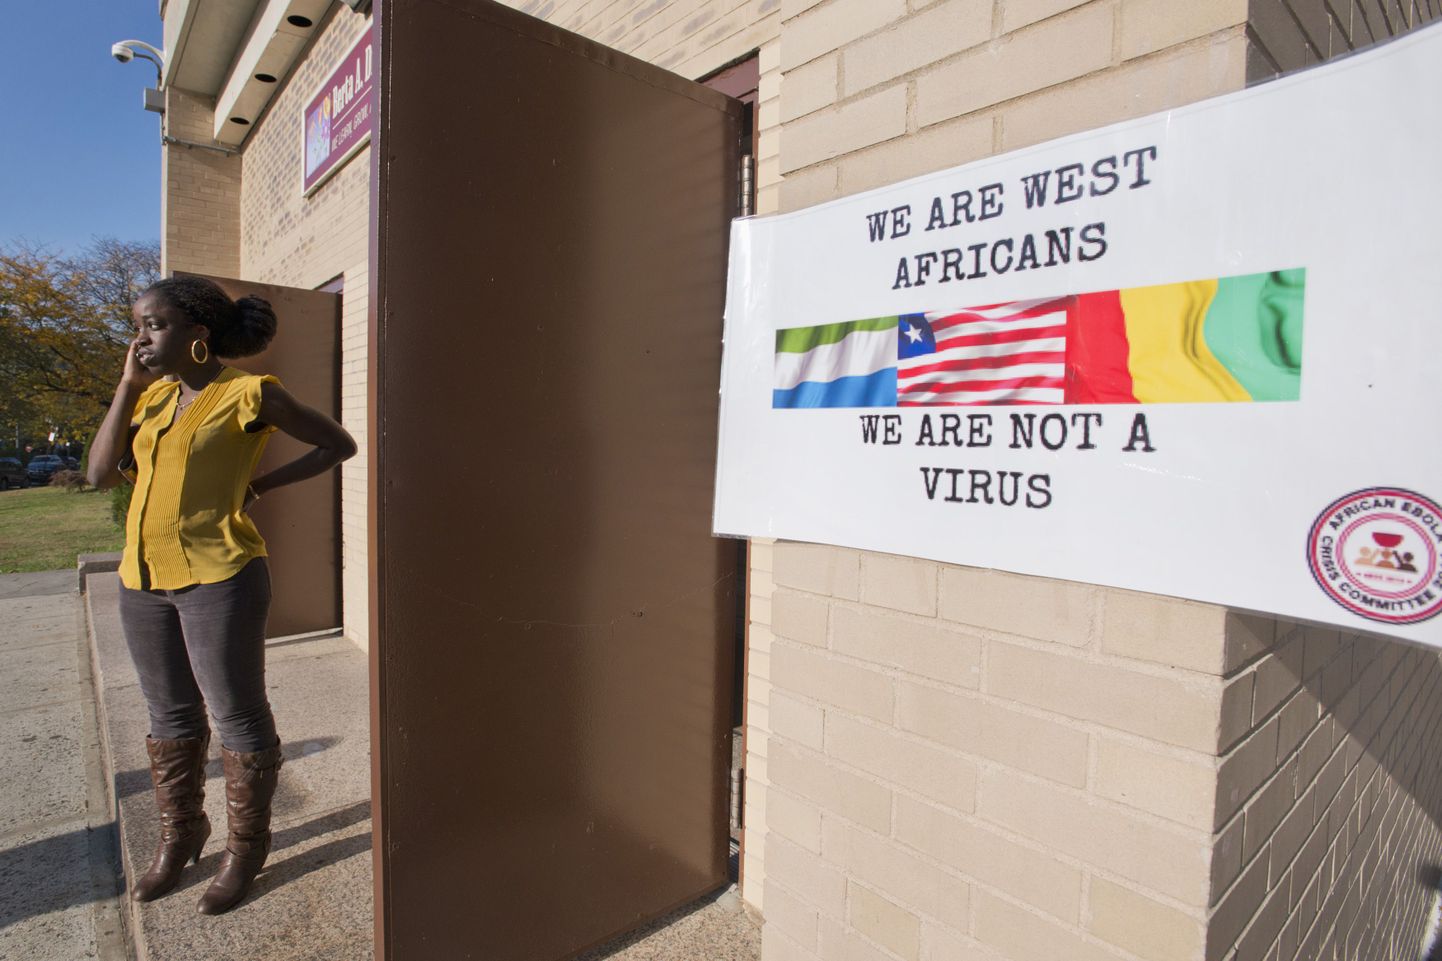 New Yorgis toimuval nõupidamisel meenutab plakat, et lääneaafriklased on siiski ka midagi muud, kui viirus.